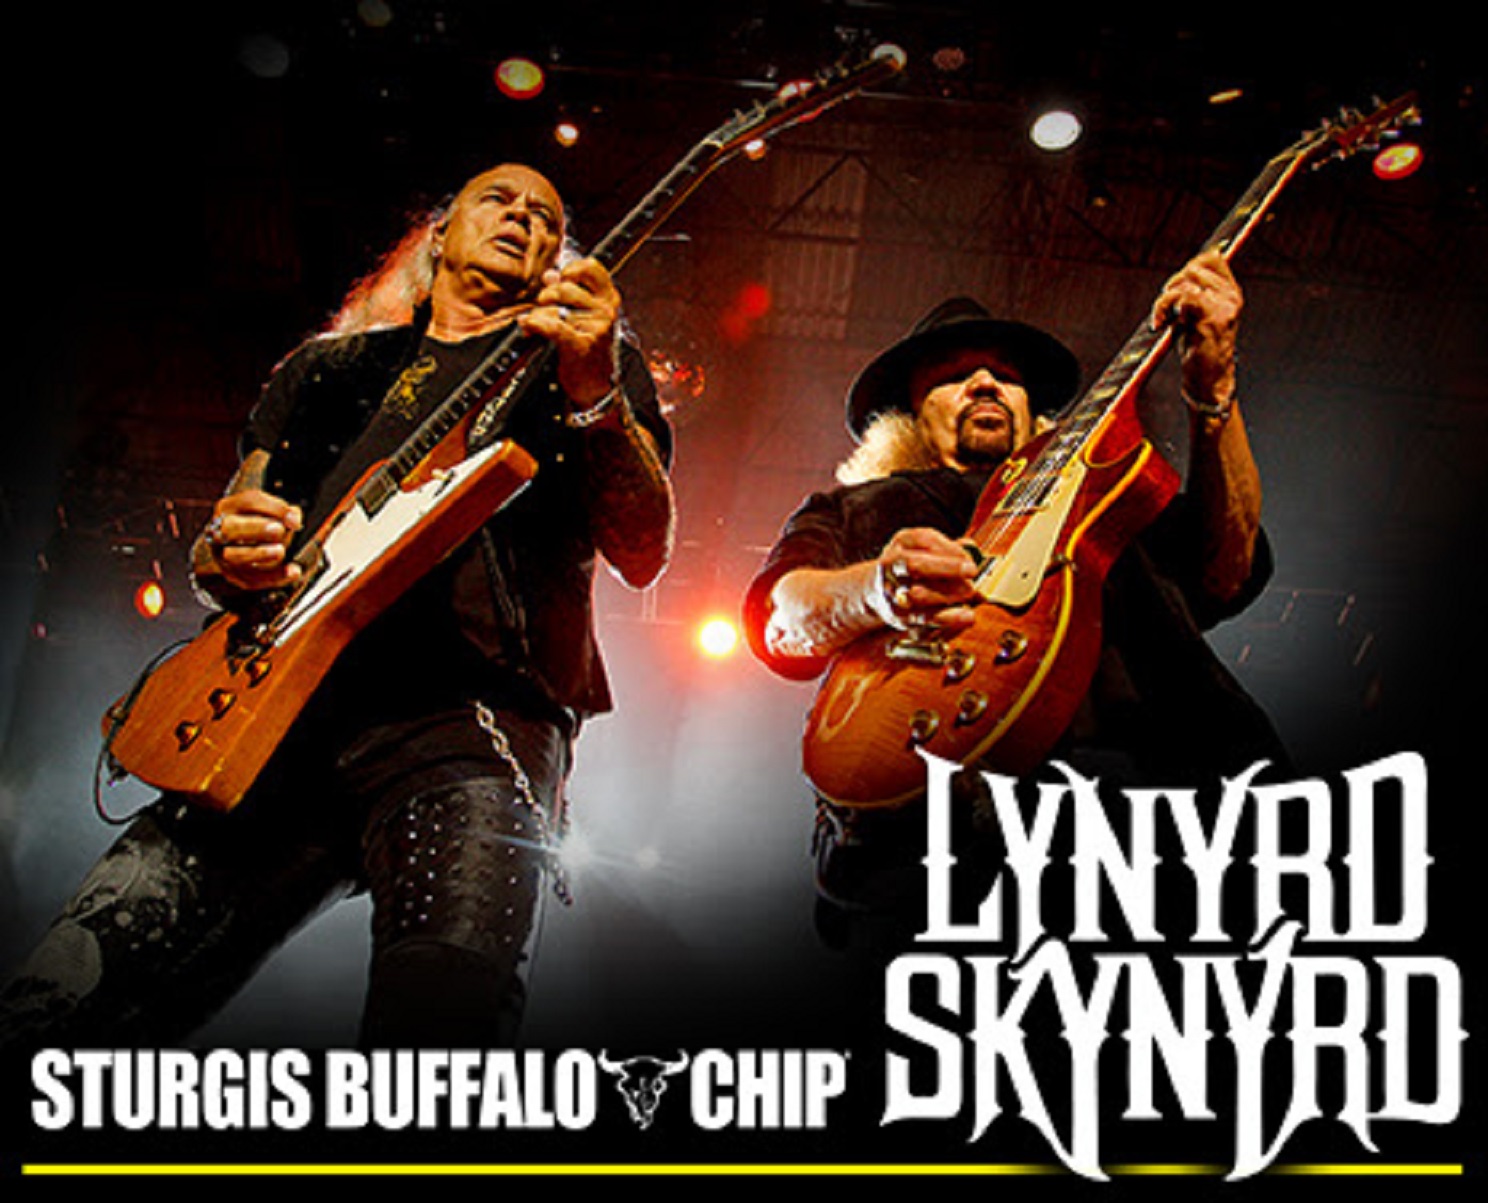 Lynyrd Skynyrd Brings Southern Rock to Buffalo Chip